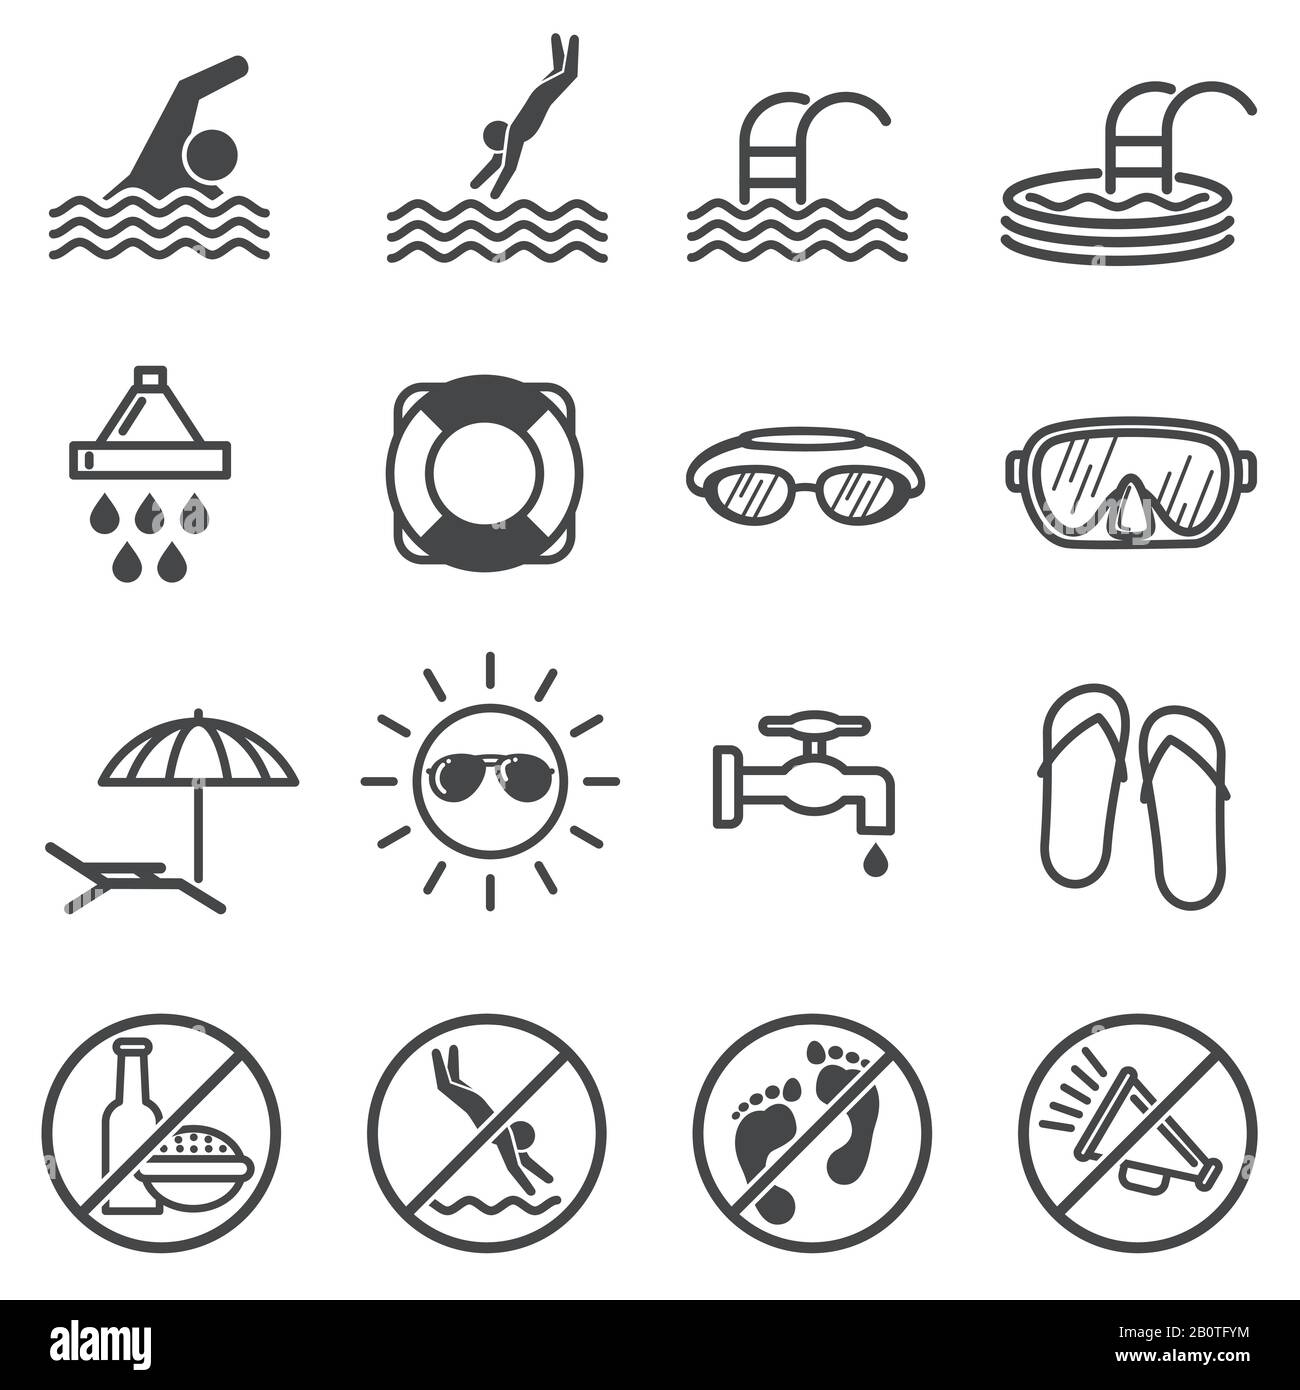 Segnali di avvertimento vettore piscina pubblica. Regole di nuoto icone. Dominio pubblico in piscina, illustrazione di restrizioni e vietato in piscina Illustrazione Vettoriale